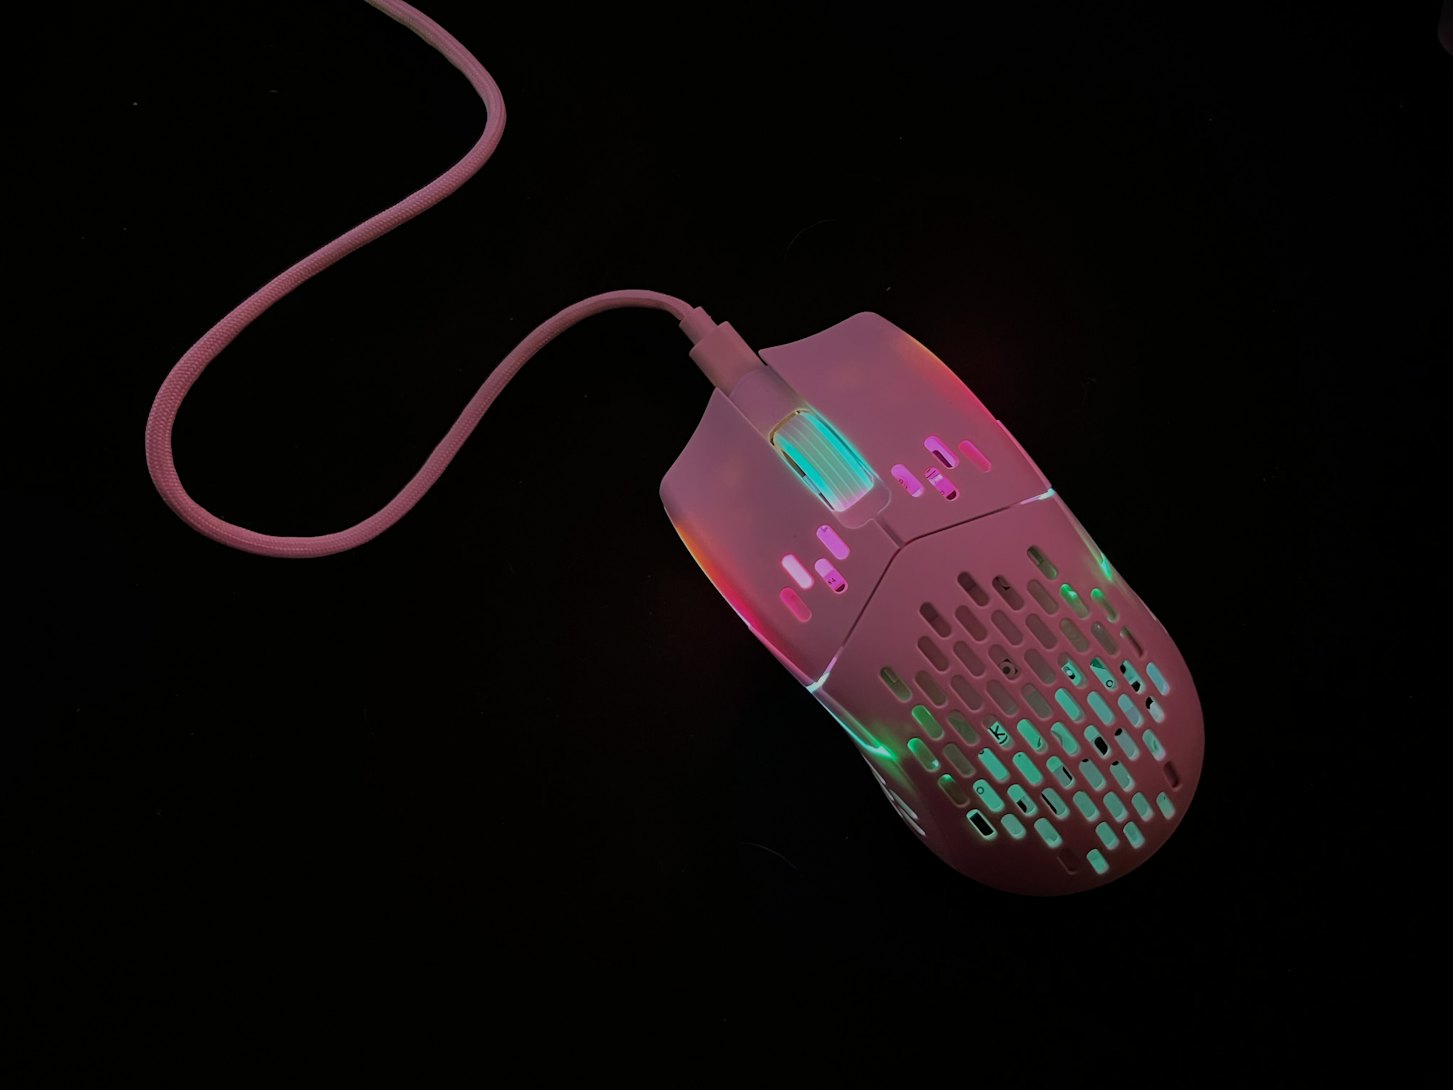 Keychron M2 Wireless Mouse – Keychron